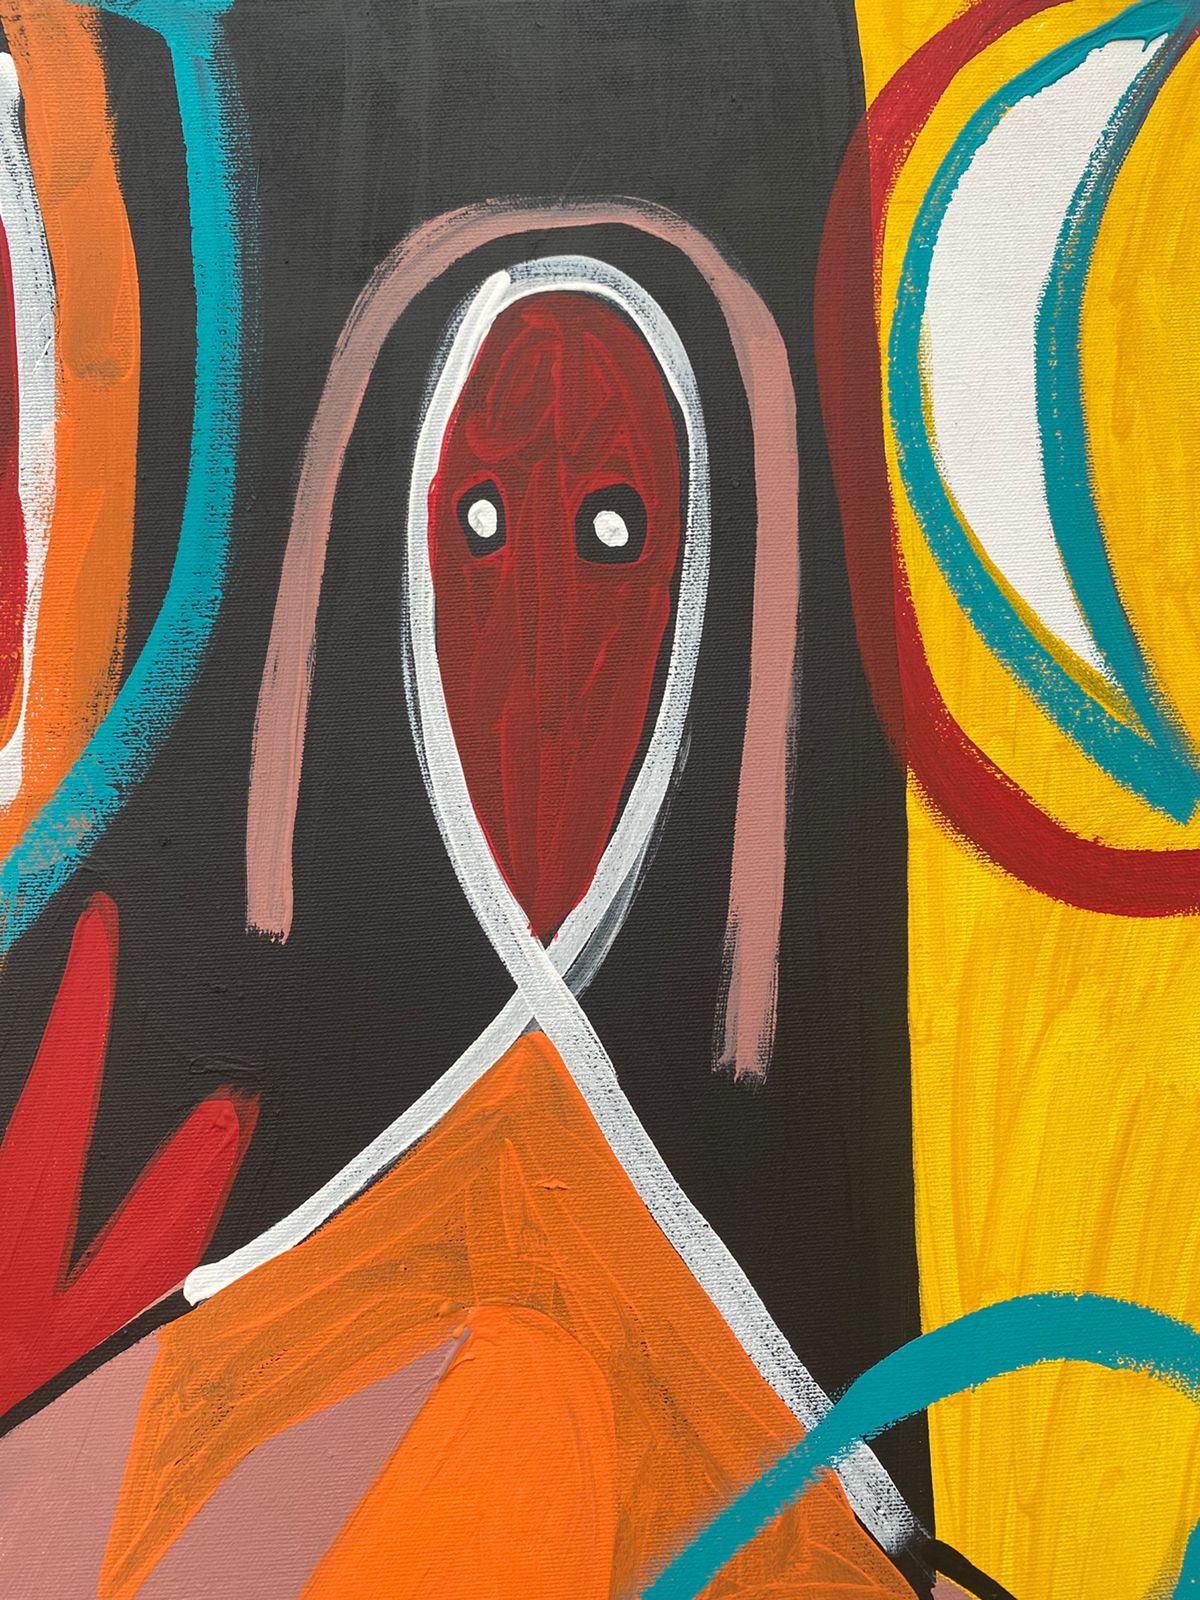 Art contemporain, peinture abstraite
Acrylique sur toile
100x150cm
Signé 




A propos de l'artiste
Enrique Pichardo (Mexico, 1973) est diplômé de l'Escuela Nacional de Pintura, Escultura y Grabado (ENPEG) 